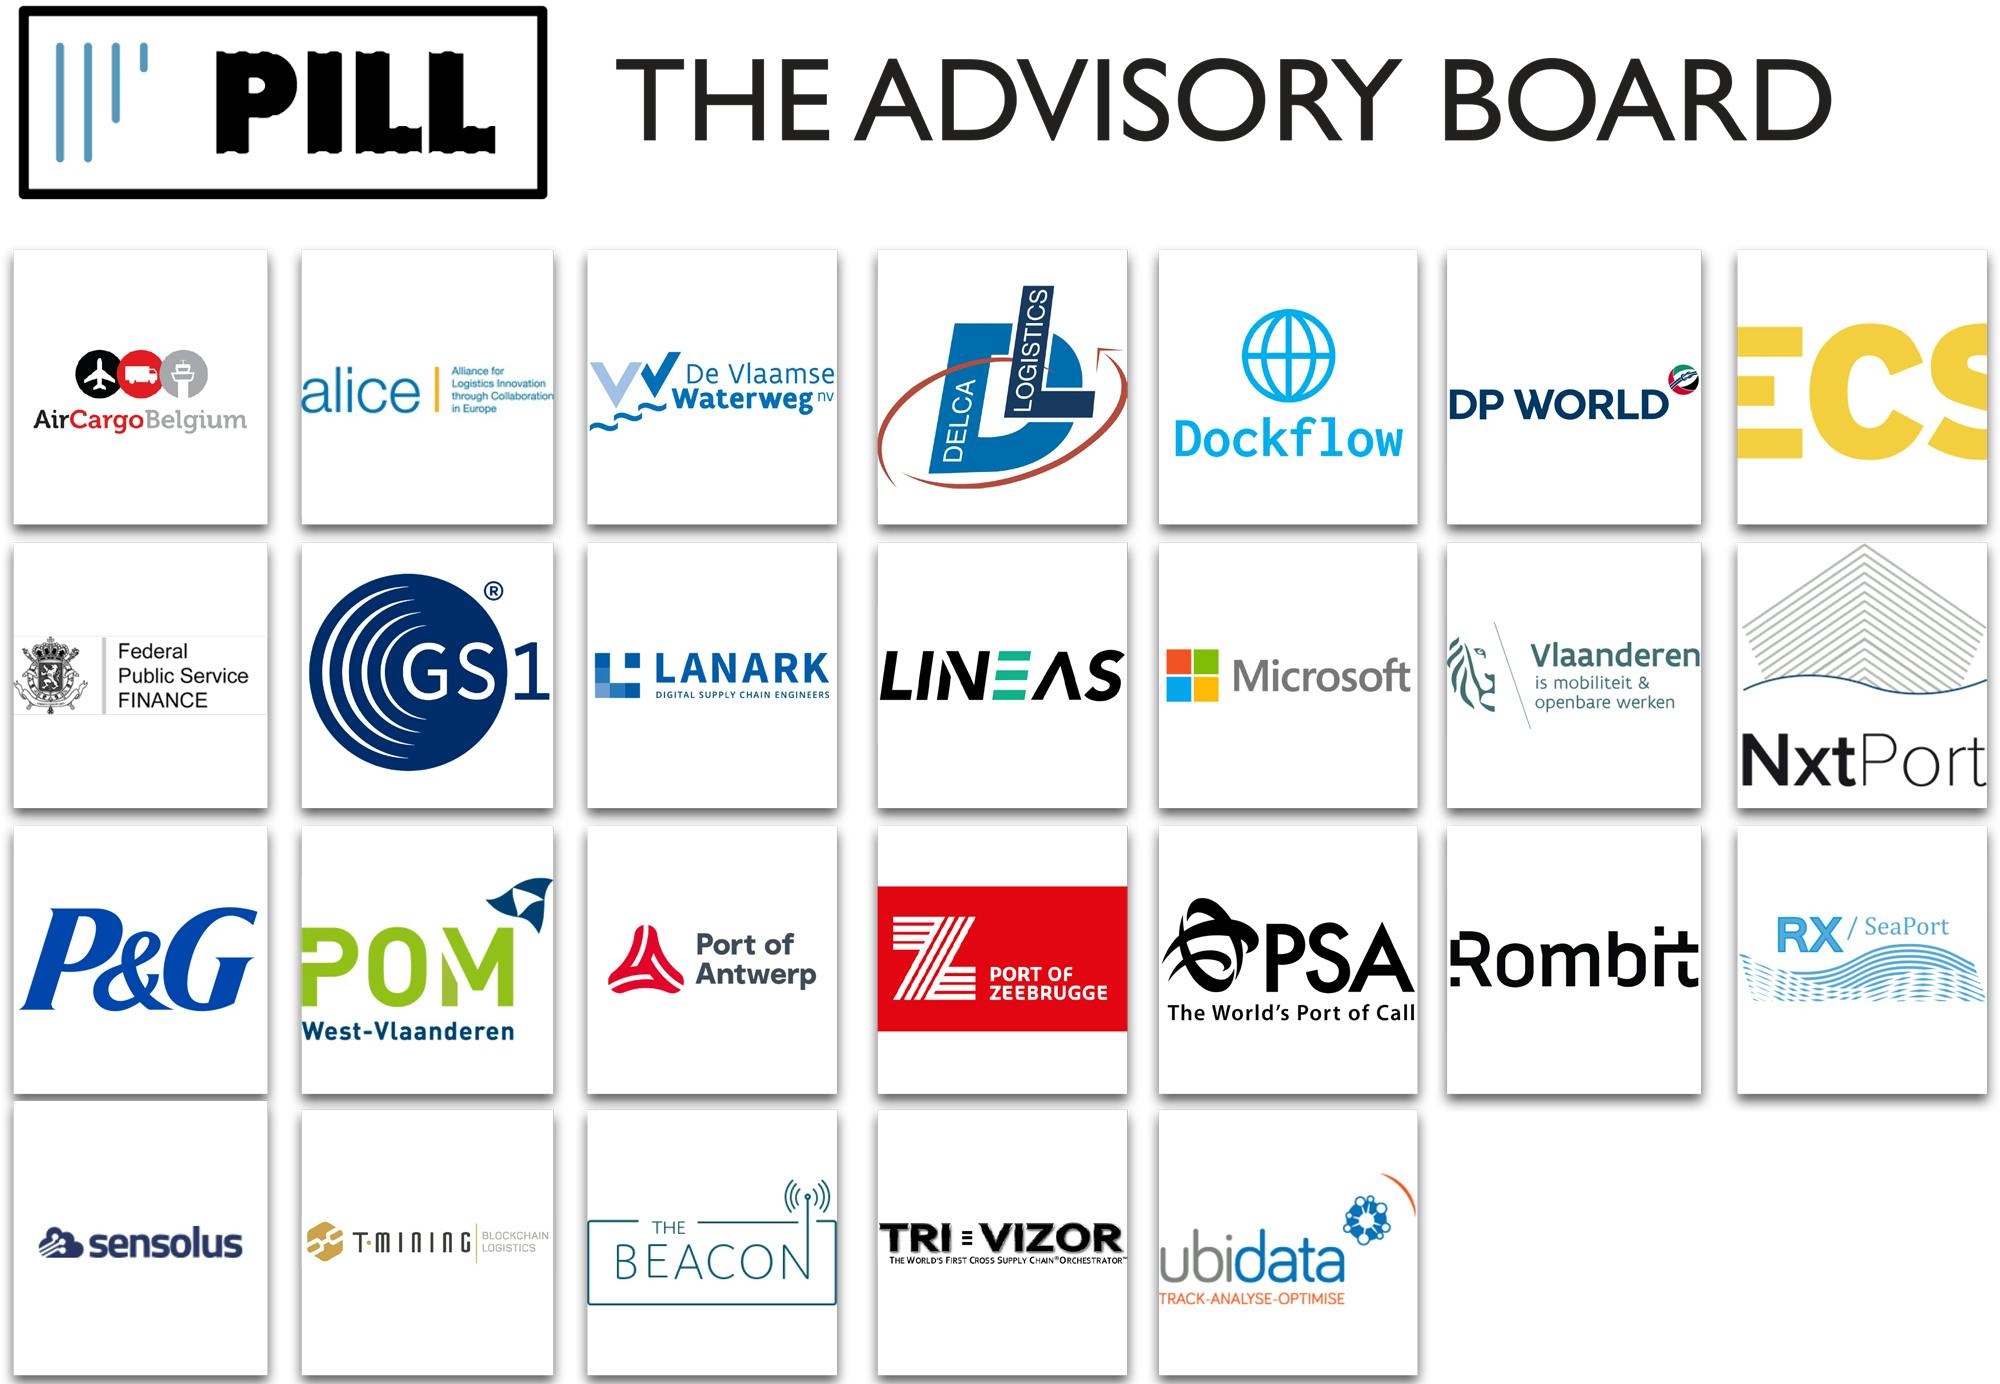 The Advisory Board PILL